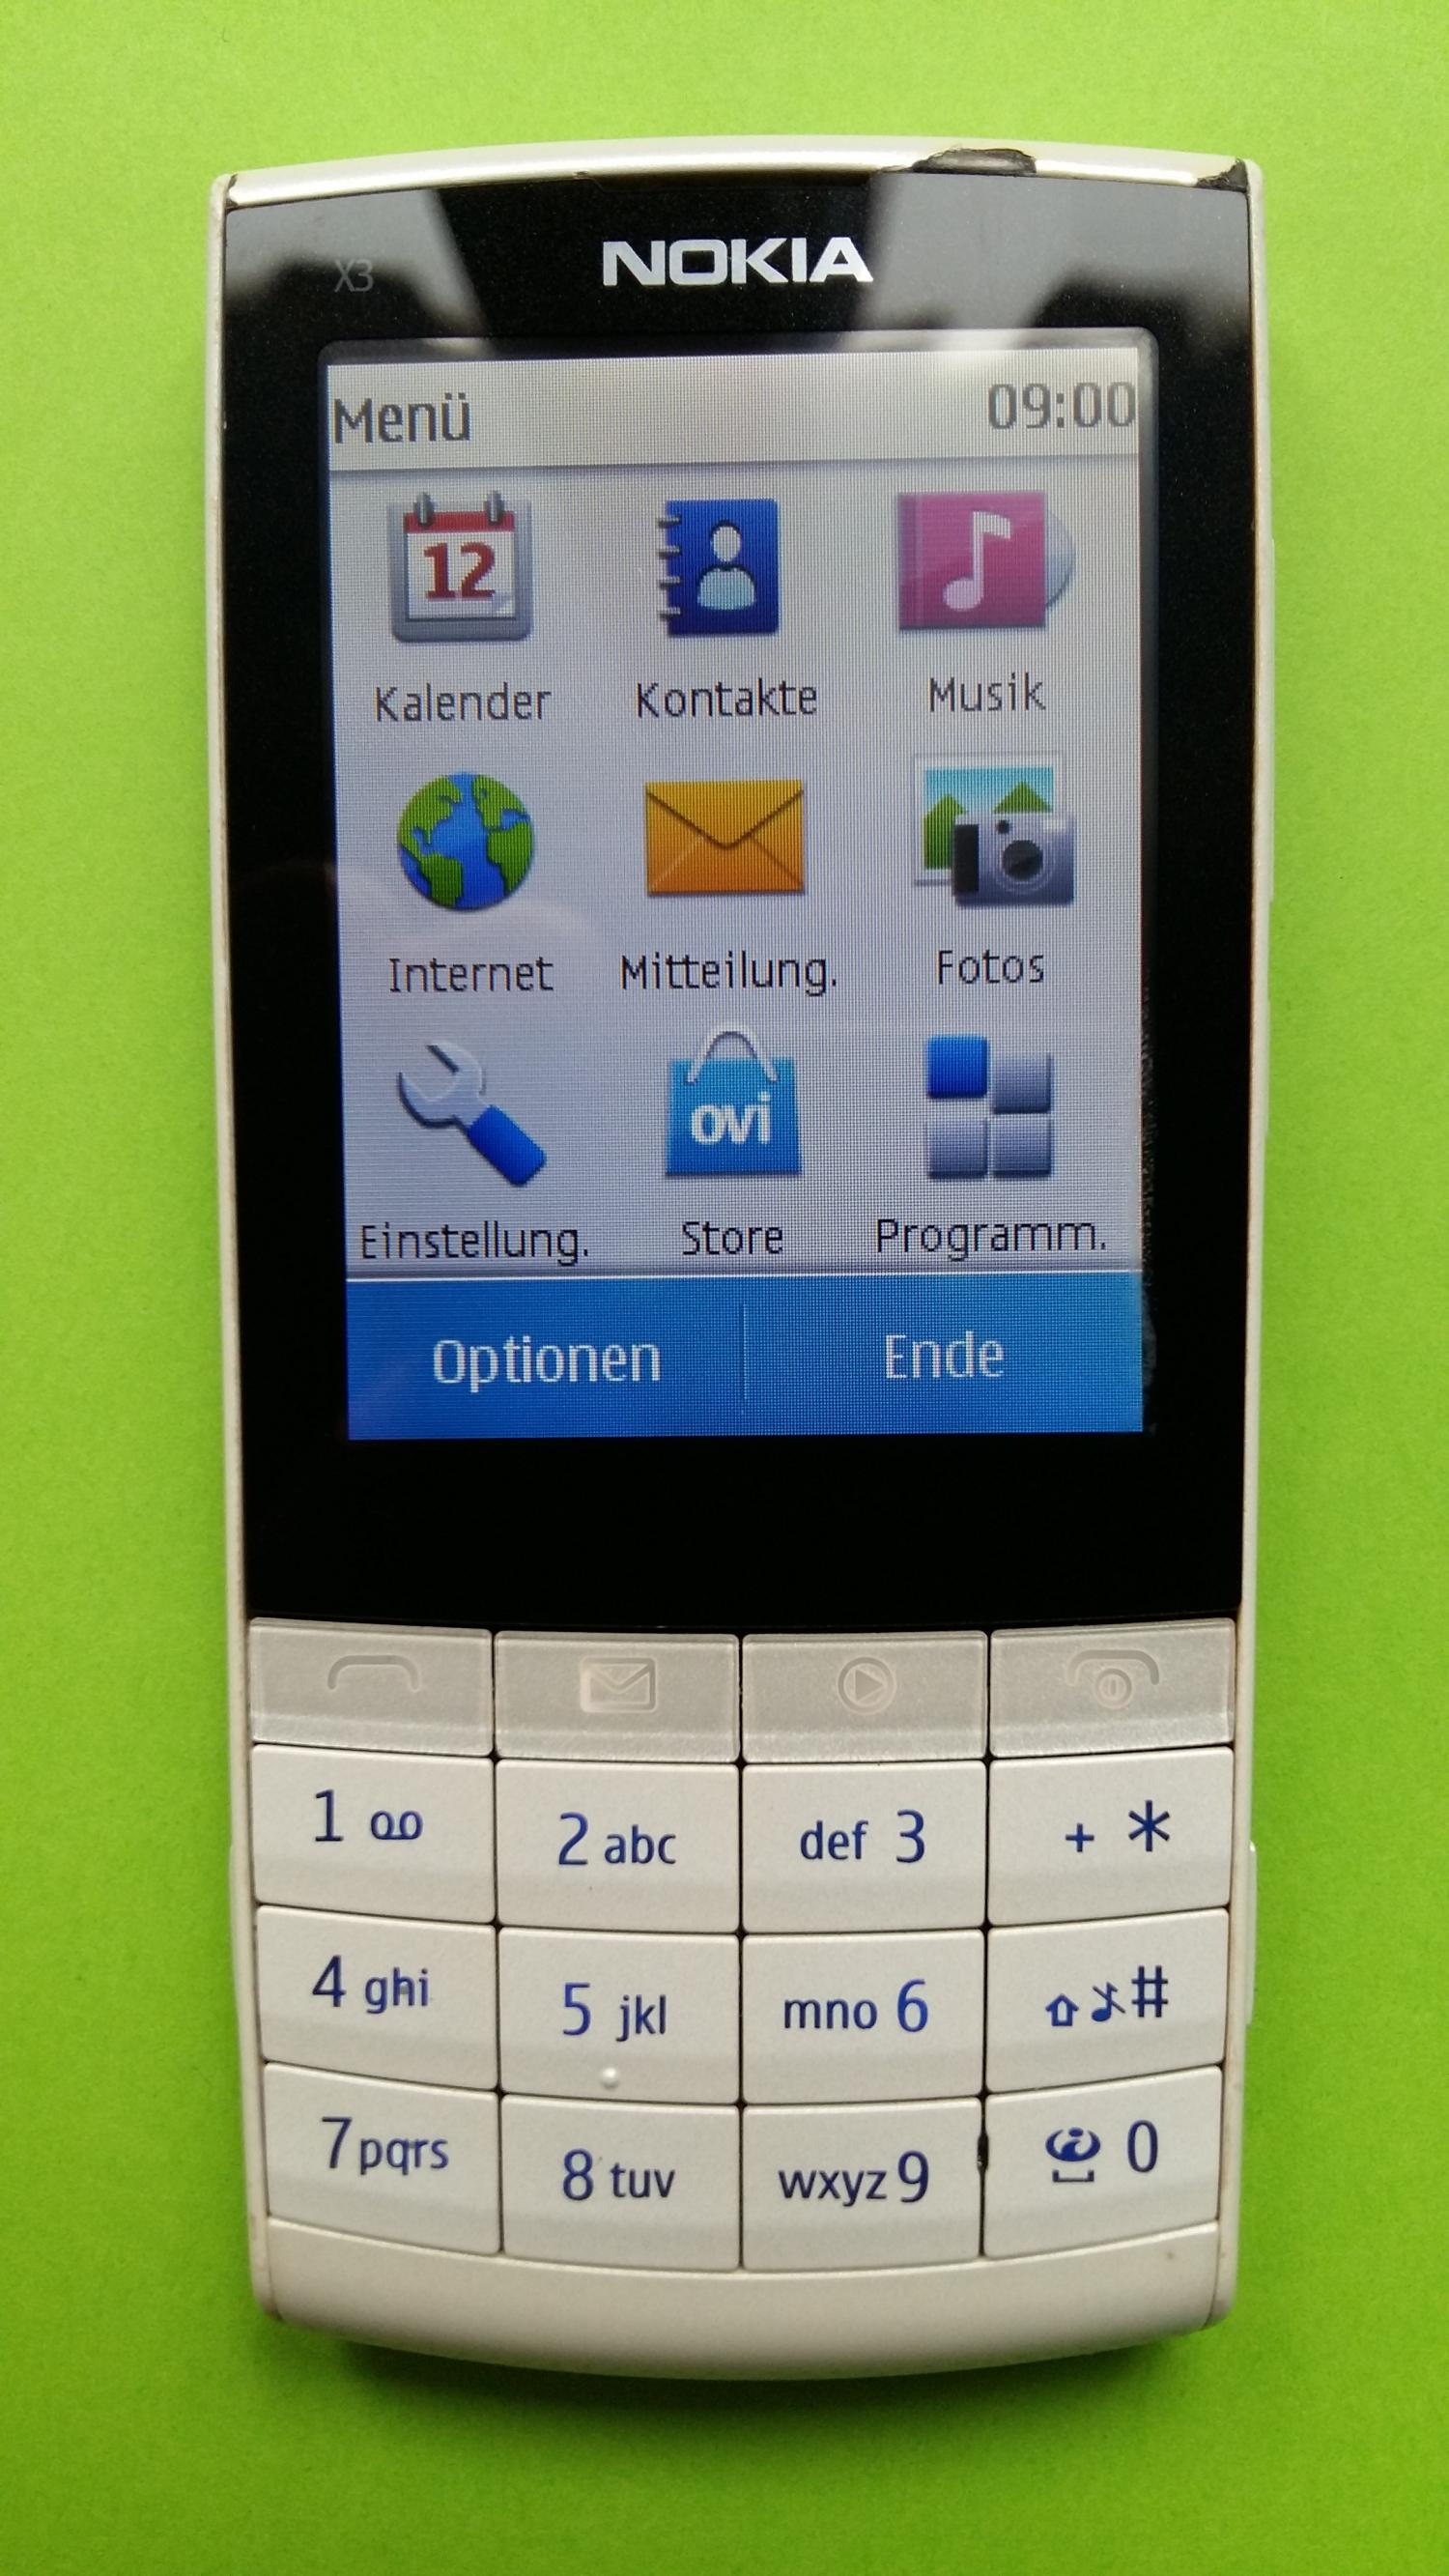 image-7299914-Nokia X3-02.5 (1)1.jpg